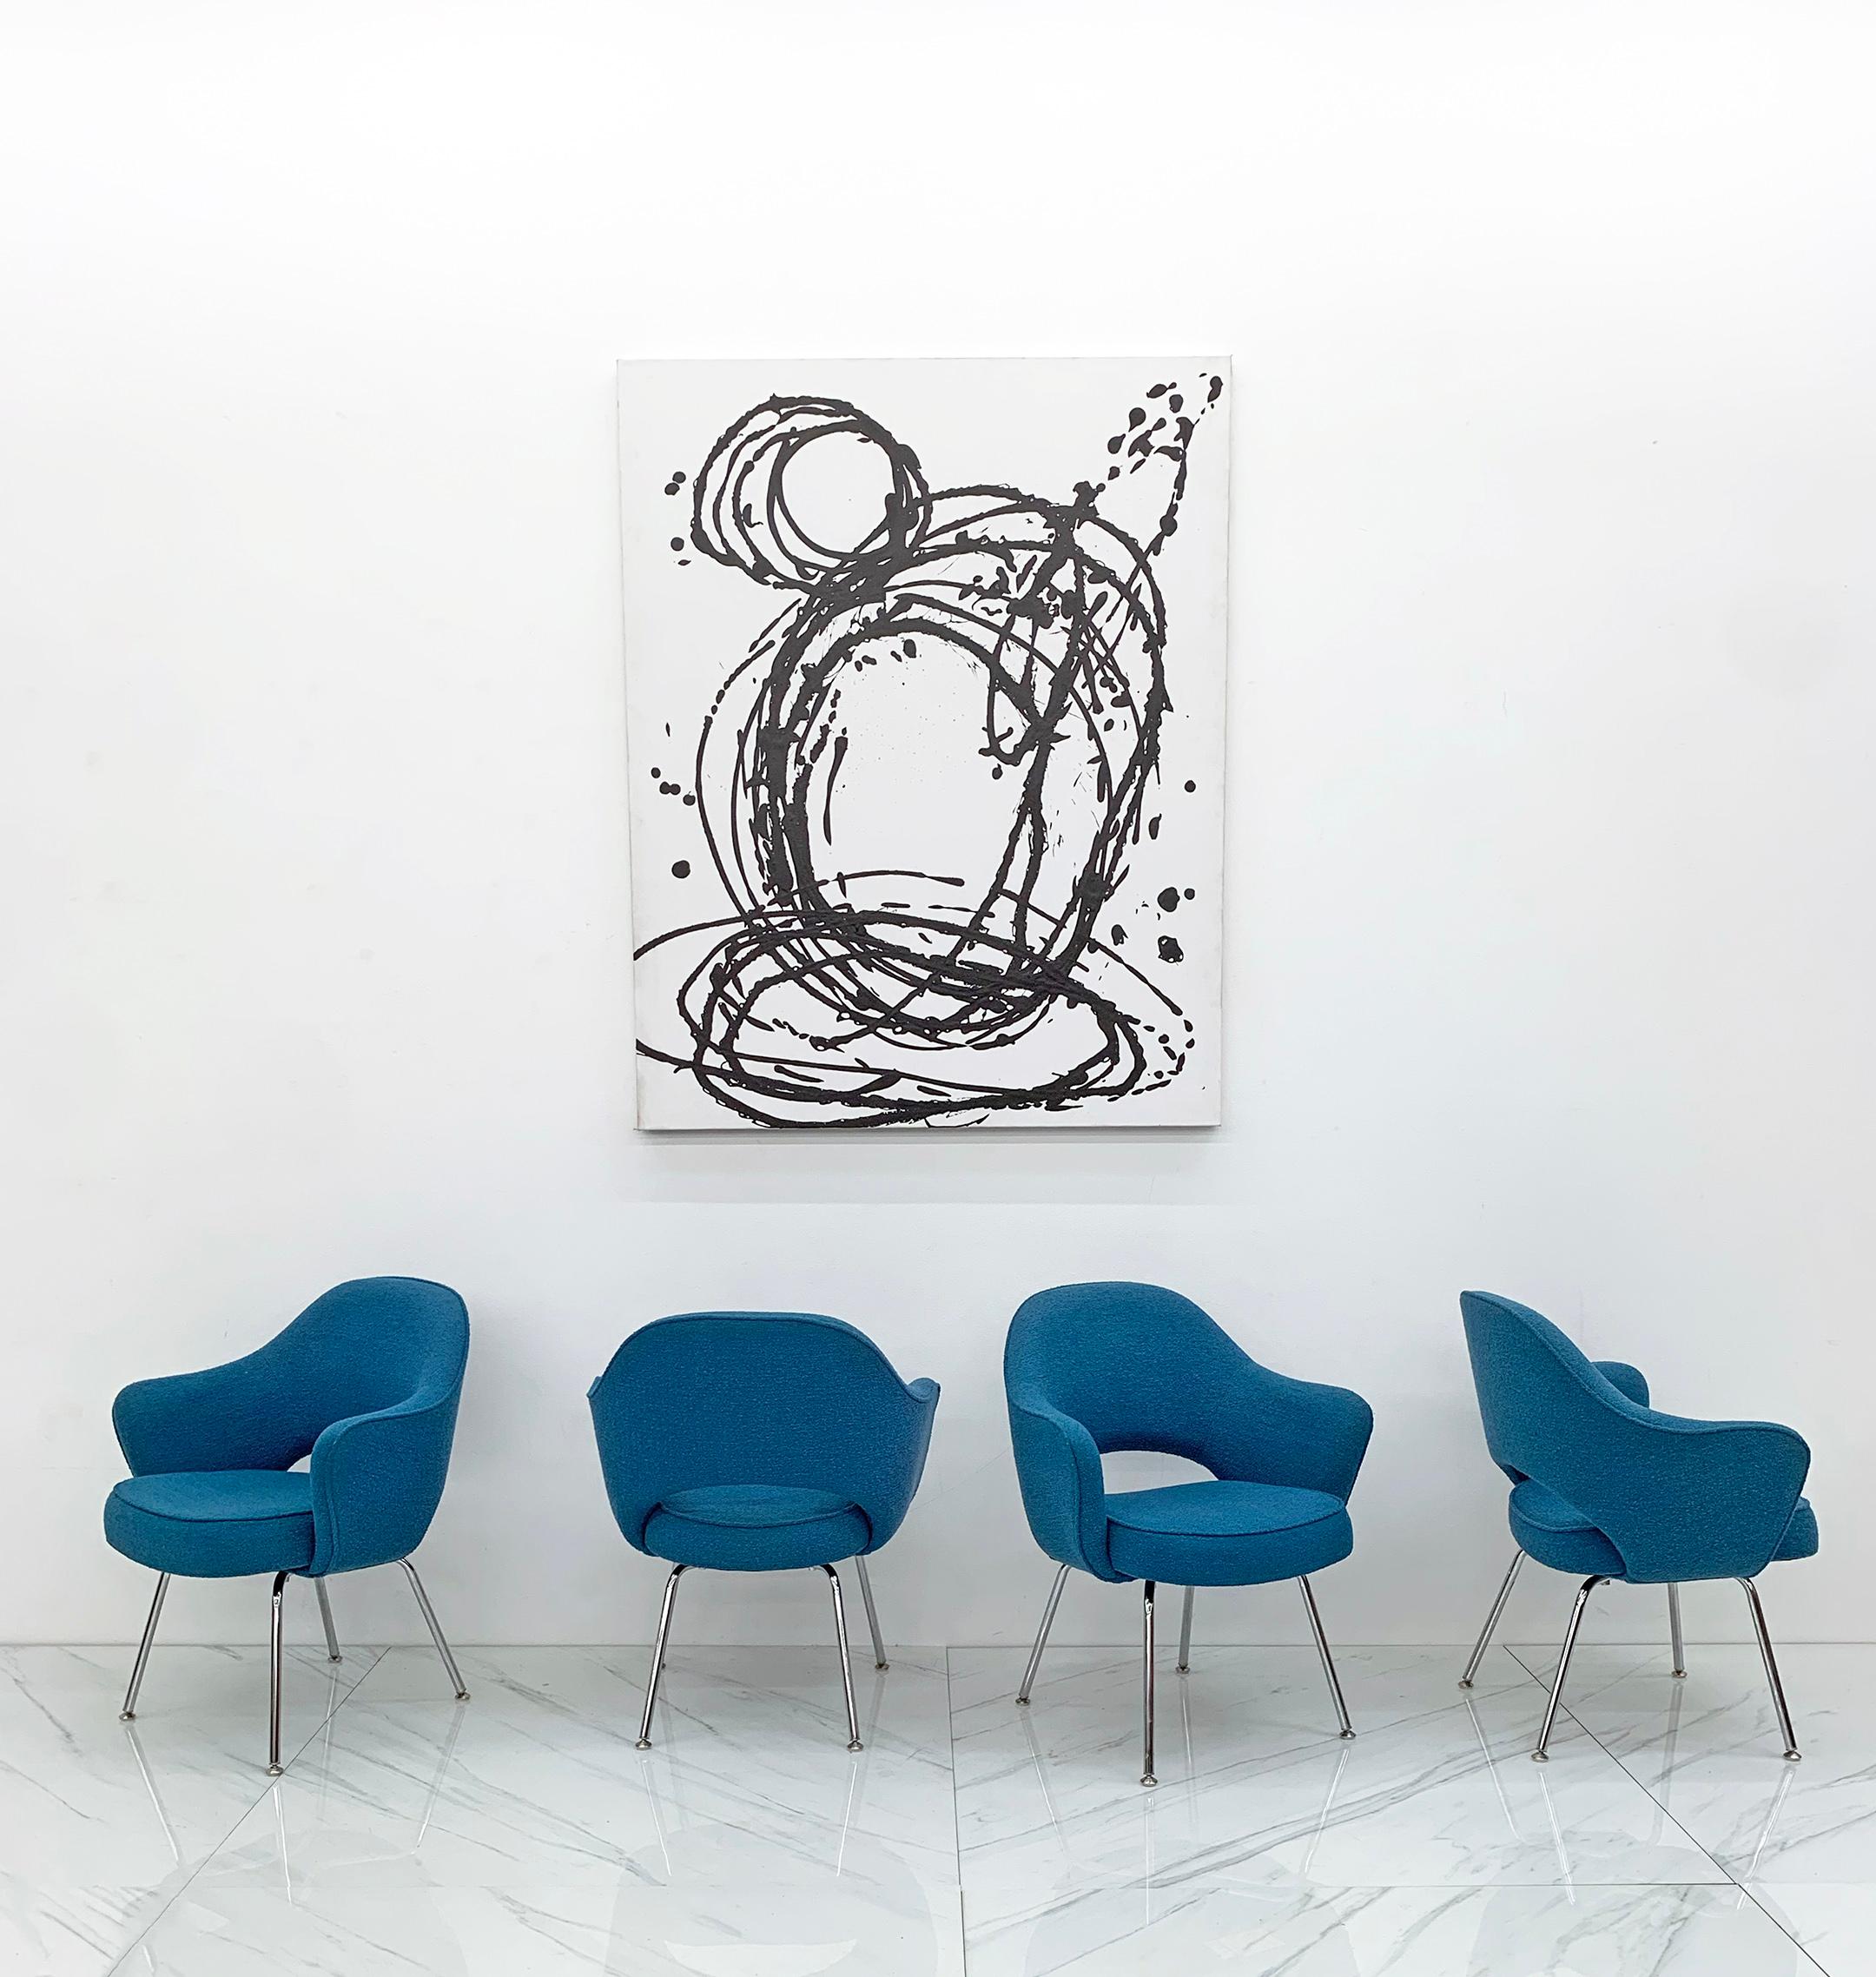 Preis pro Stuhl*

Der Chefsessel von Eero Saarinen, einer der beliebtesten Entwürfe von Knoll in den letzten 70 Jahren, ist so zeitlos und schick wie nur möglich. Dieses aktuelle 4er-Set in klassischem Blau-Boucle ist ein wunderbarer Farbakzent für